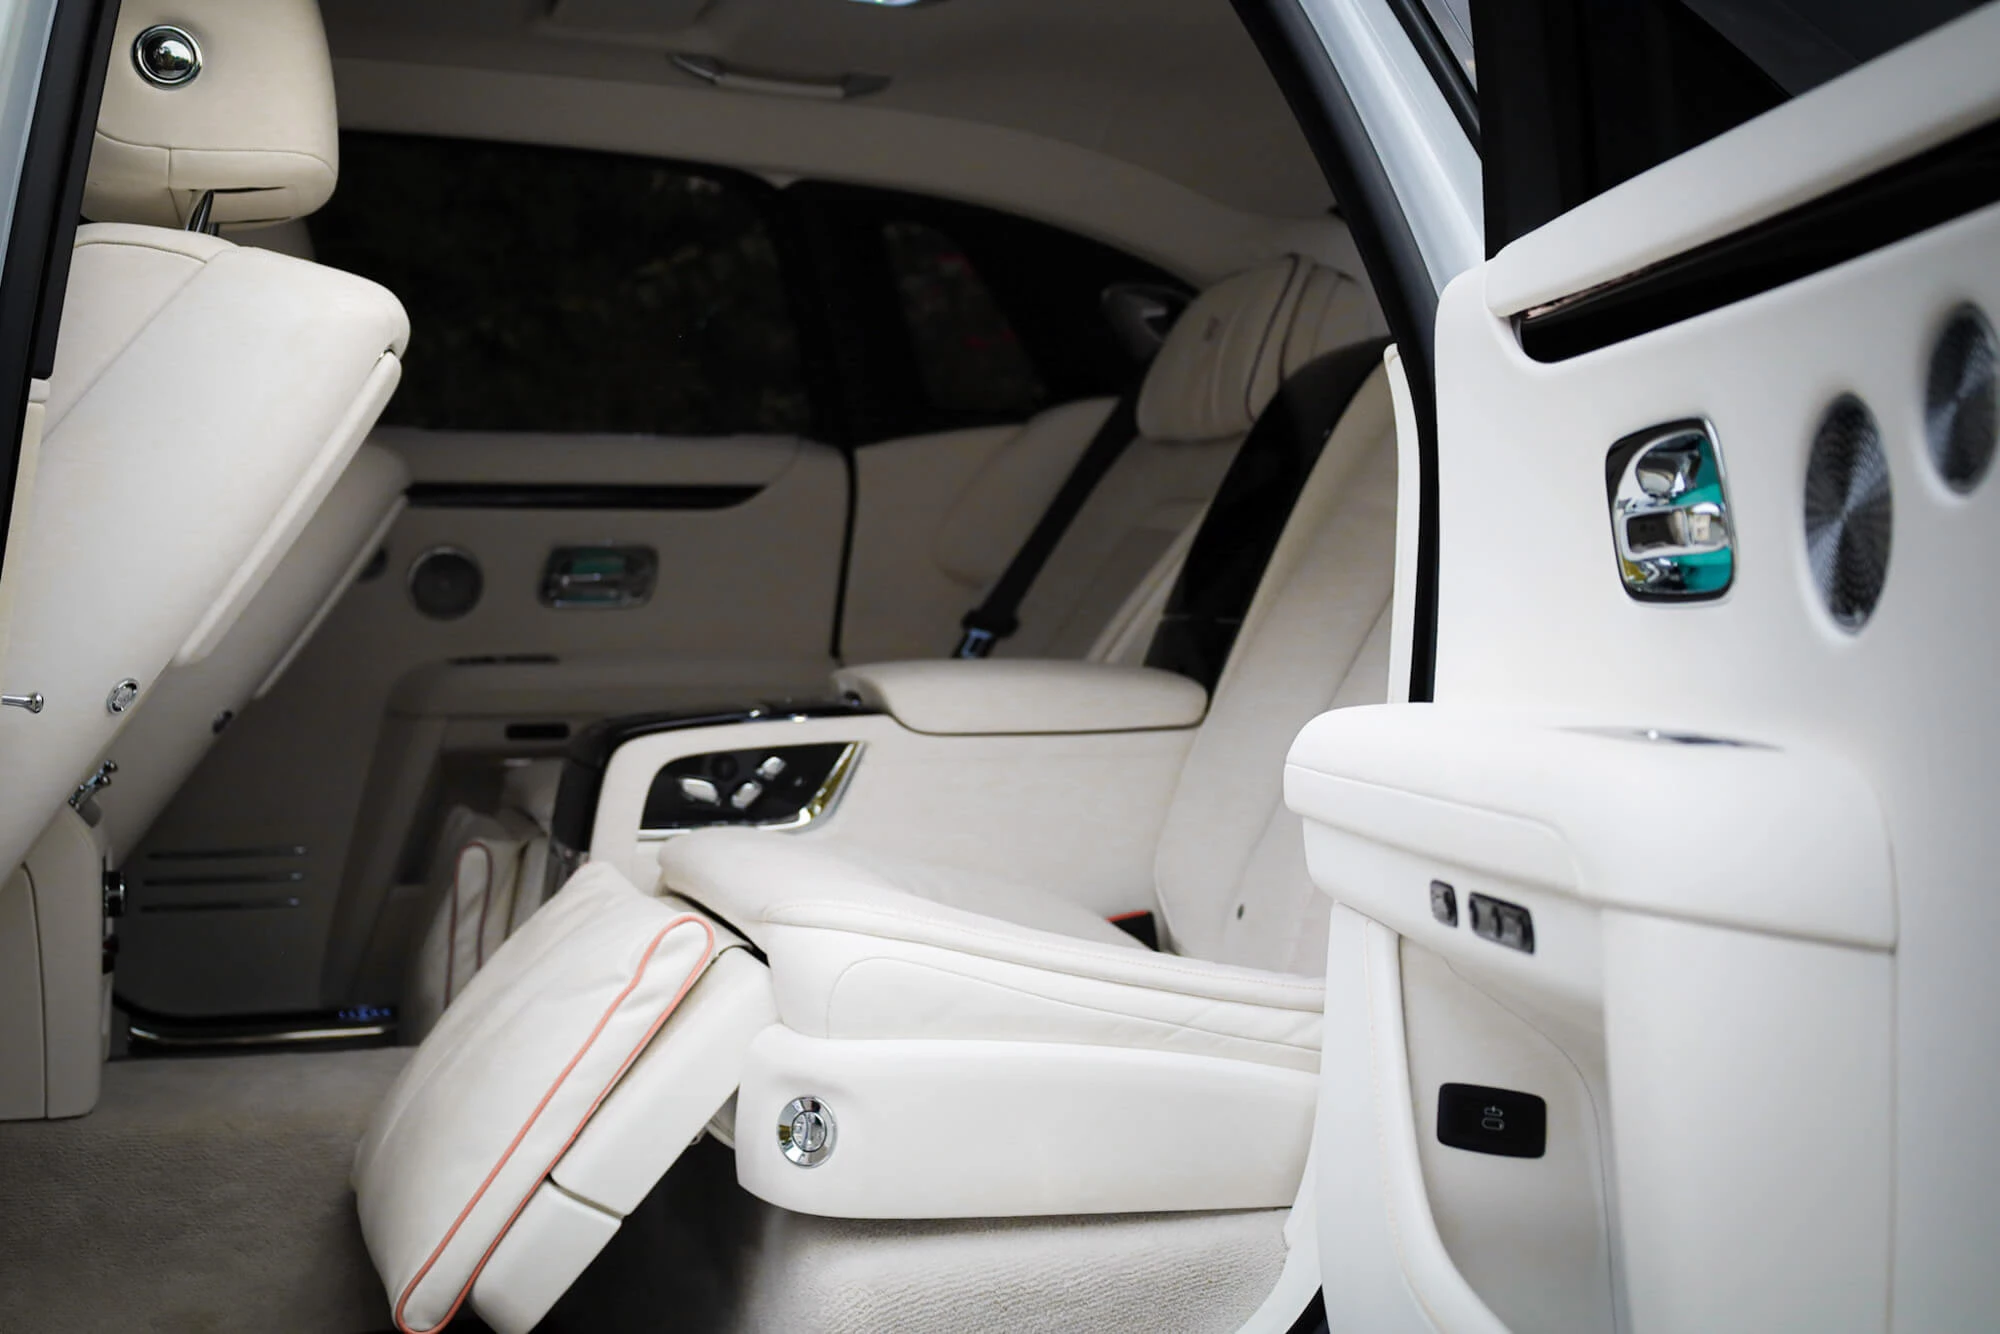 Rolls-Royce Ghost Weiß